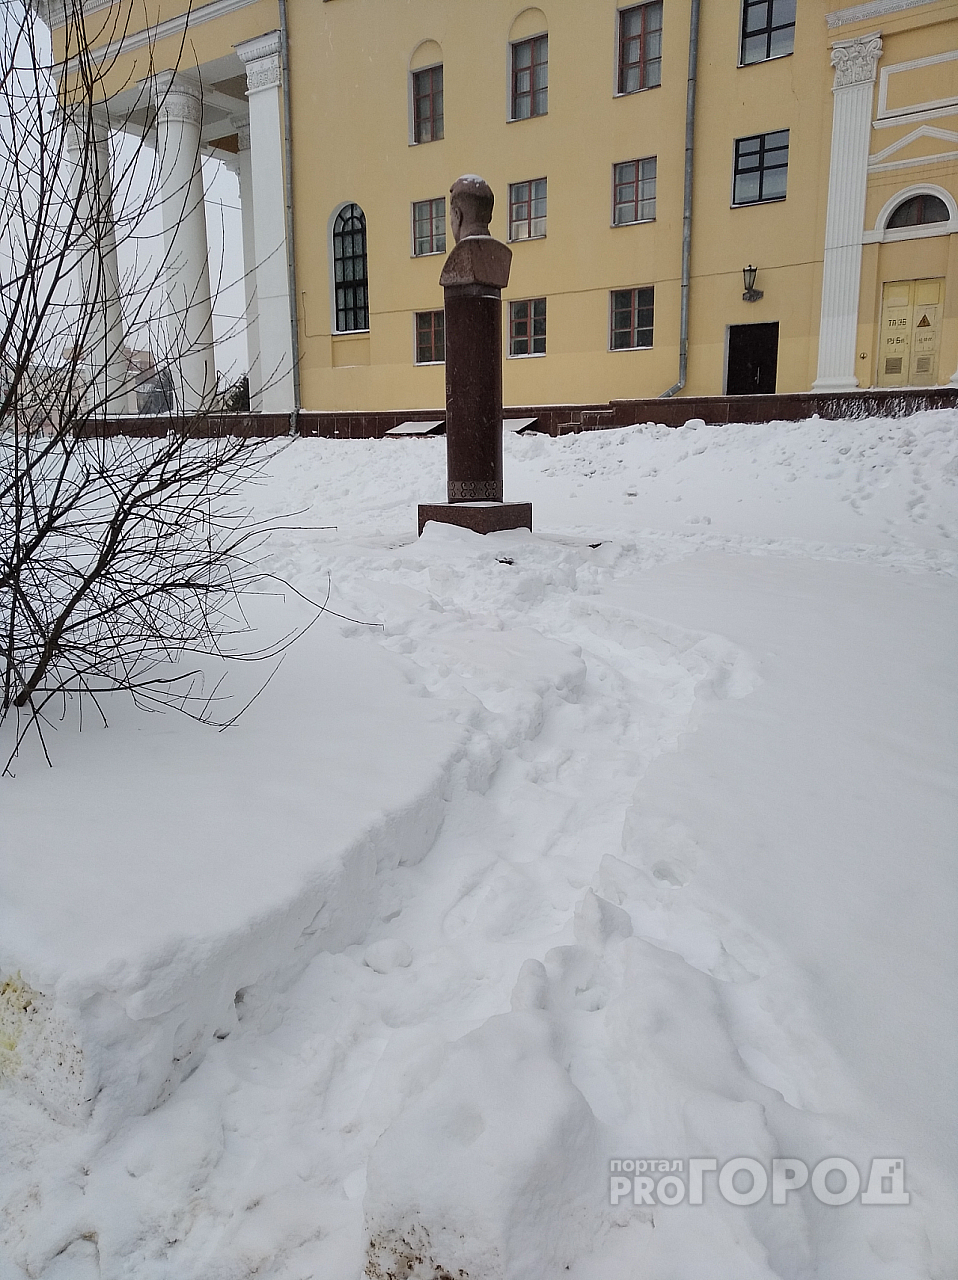 Йошкаролинец о засыпанном снегом памятнике Шкетану: «Так мы чтим память предков?»